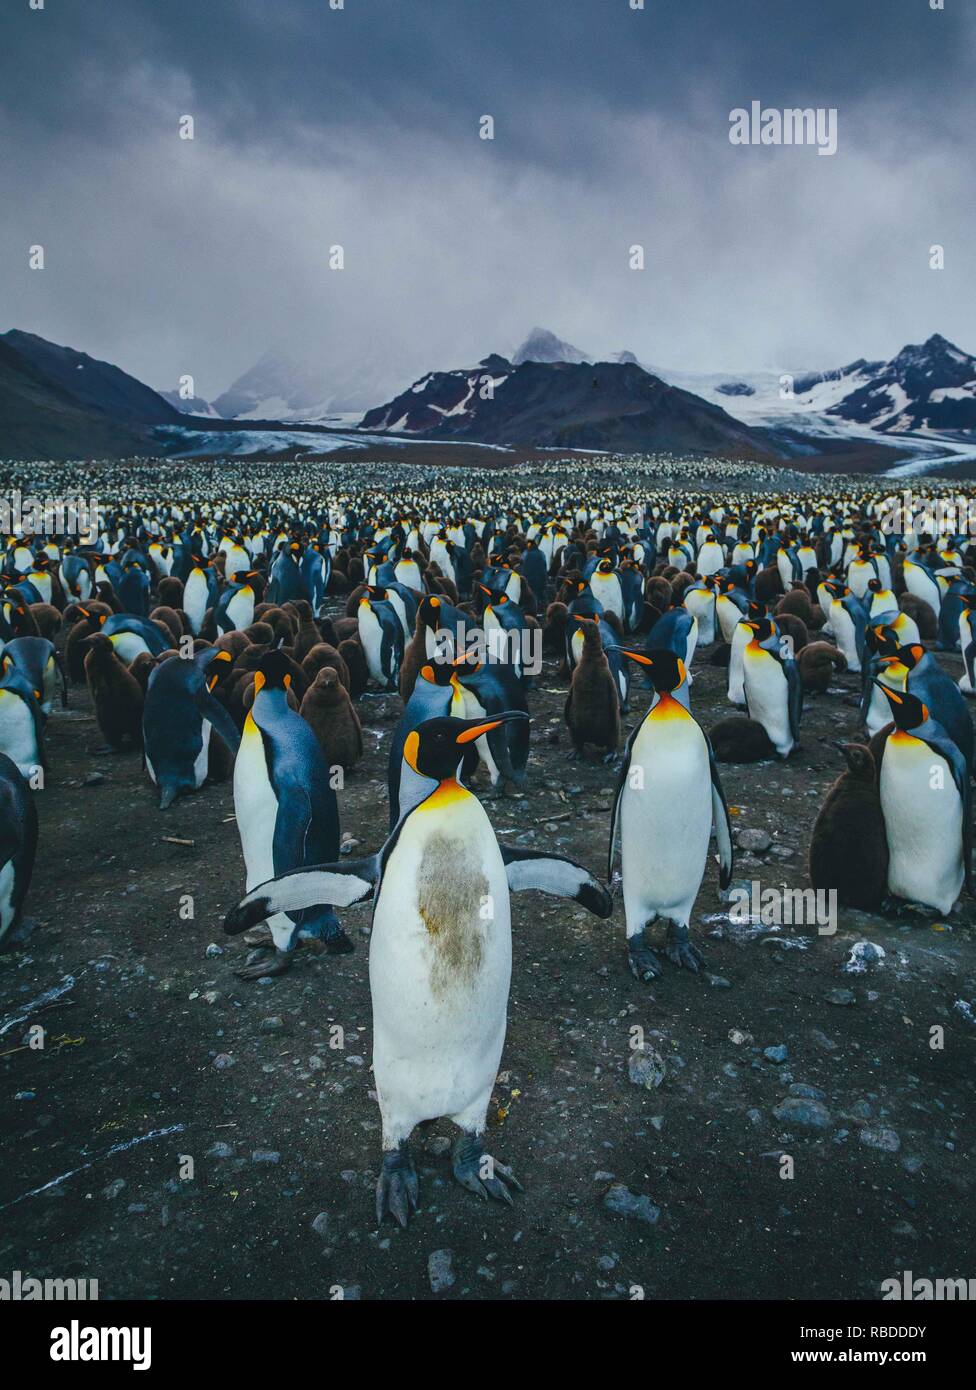 Unglaubliche Bilder haben eine "EA" der Pinguine erfasst mit Hunderten von die Vögel so weit das Auge sehen kann. Die atemberaubende Aufnahmen zeigen die Pinguine sammeln am Strand mit ihren Jungen als die Berge hoch in den Himmel hinter Ihnen steigen. Andere markante Bilder zeigen, wie die Sonne wie die Pinguine watscheln über den Strand und die stolzen Tiere ihre Schnäbel in die Luft. Die bemerkenswerte Szene war in South Georgia im Sub antarktischen Inseln der Antarktis von Polar Fotograf David Merron (42) aus Toronto, Kanada gefangen. Mediadrumimages/David Merron Stockfoto